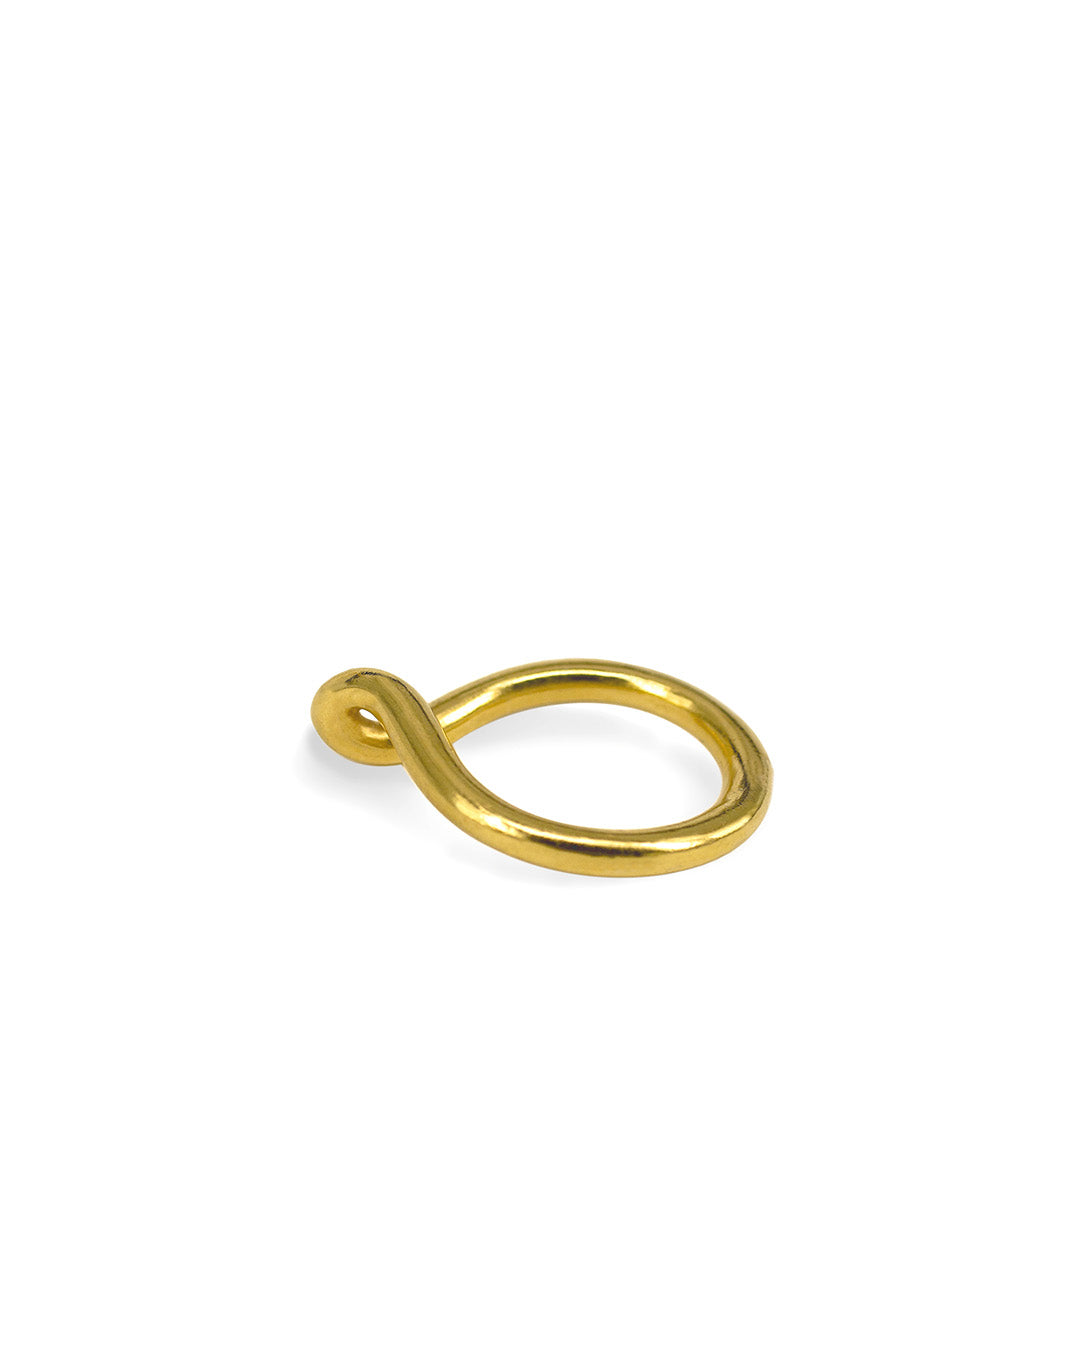 MECAROLA Stacked Ring